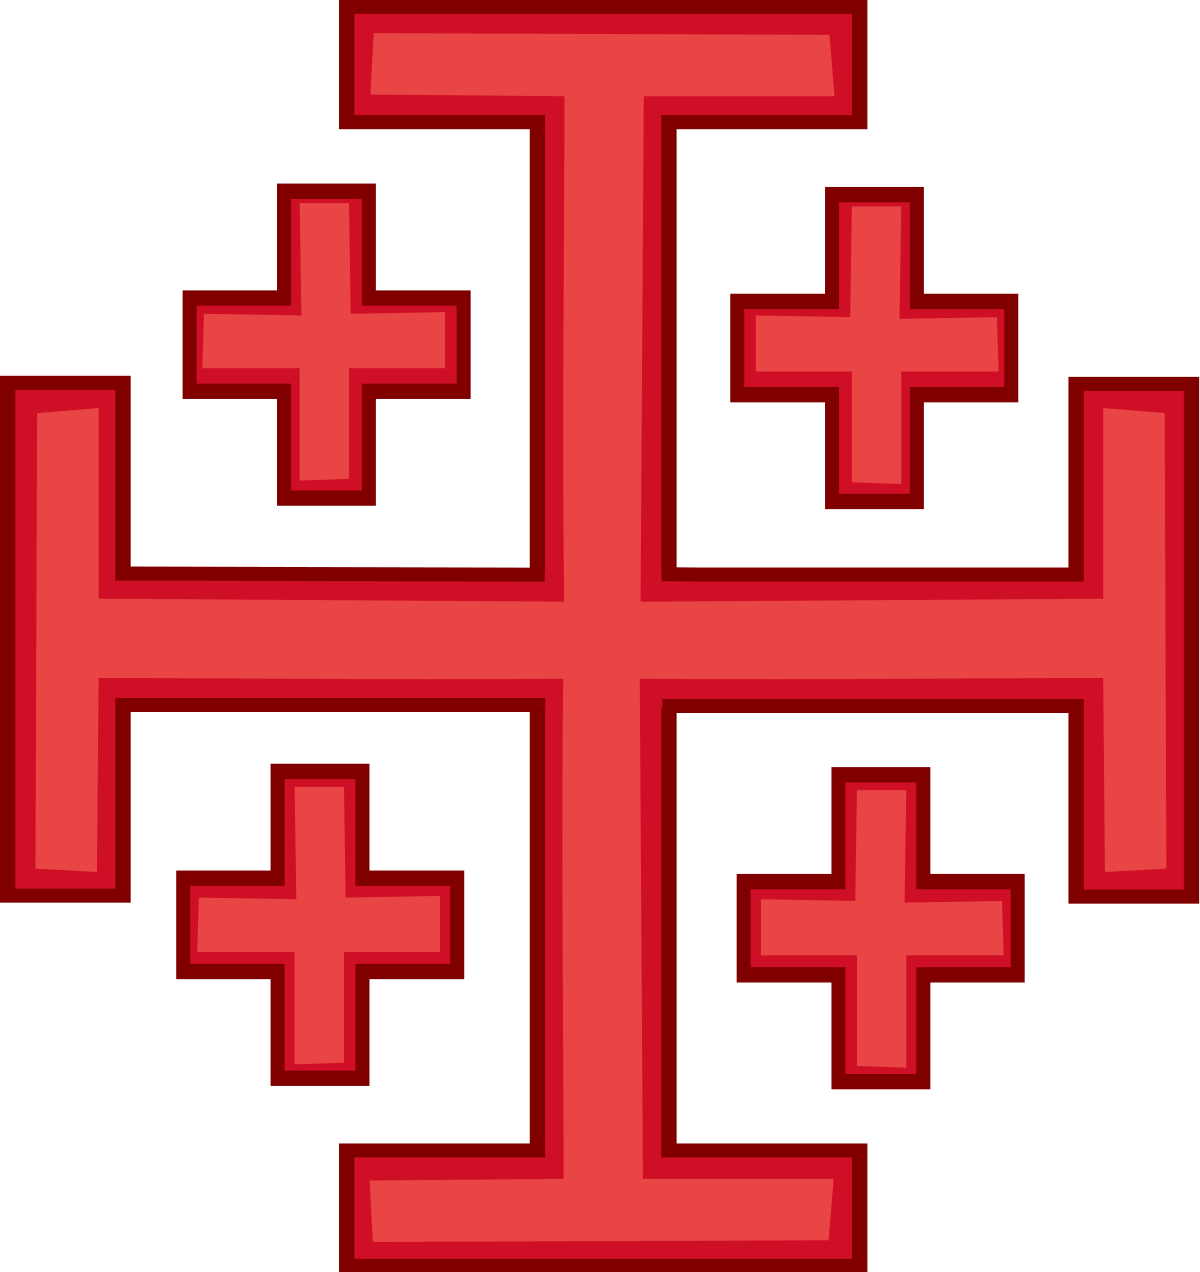 Крест Иерусалимского королевства. Крест ордена гроба Господня. Крест Иерусалимский Штандарт. Иерусалимский крест крестоносцев. Герб с красным крестом